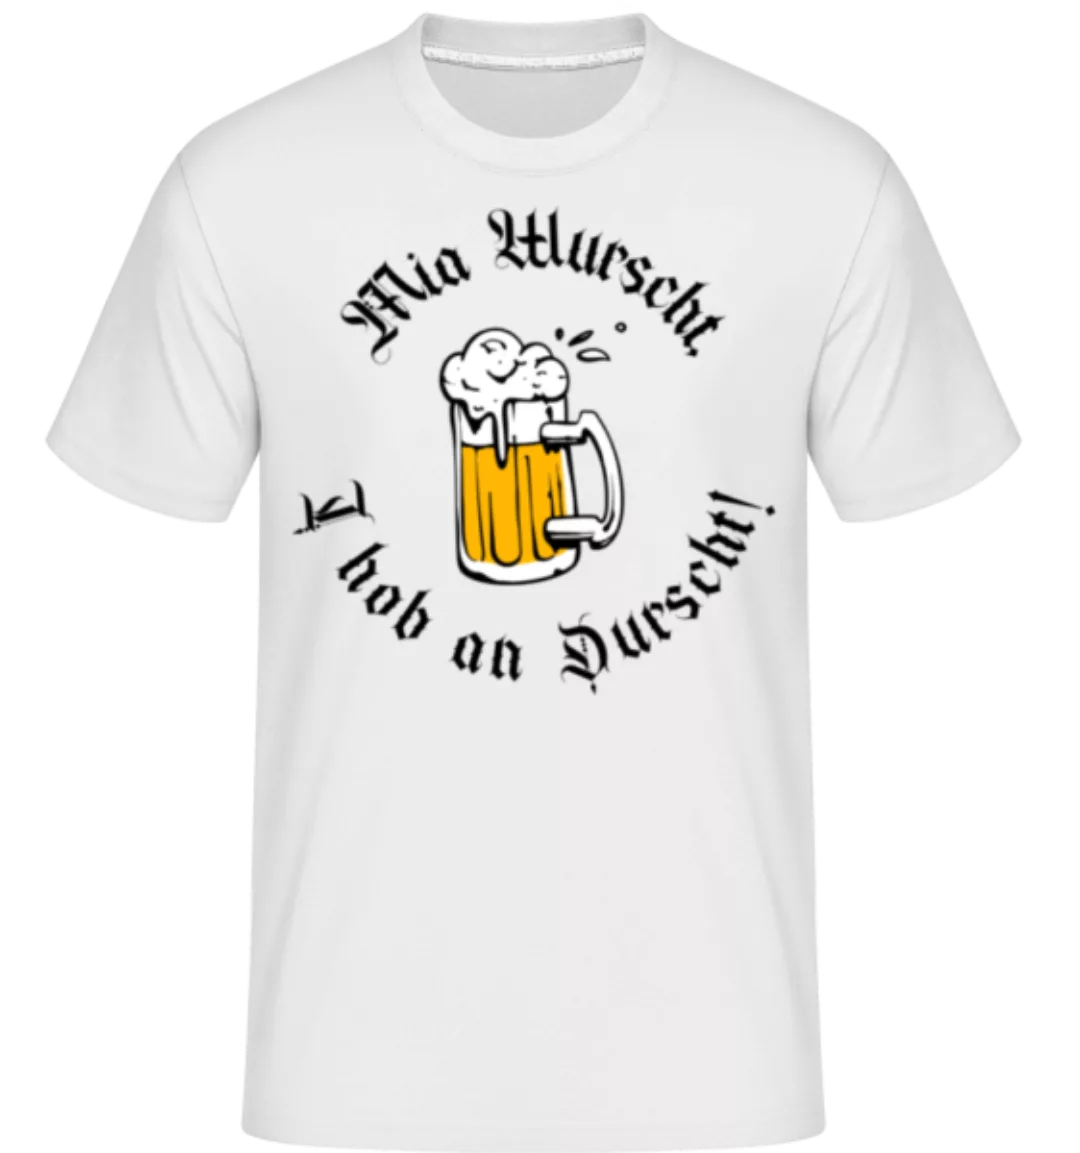 Mia Wurscht I Hob An Durscht! · Shirtinator Männer T-Shirt günstig online kaufen